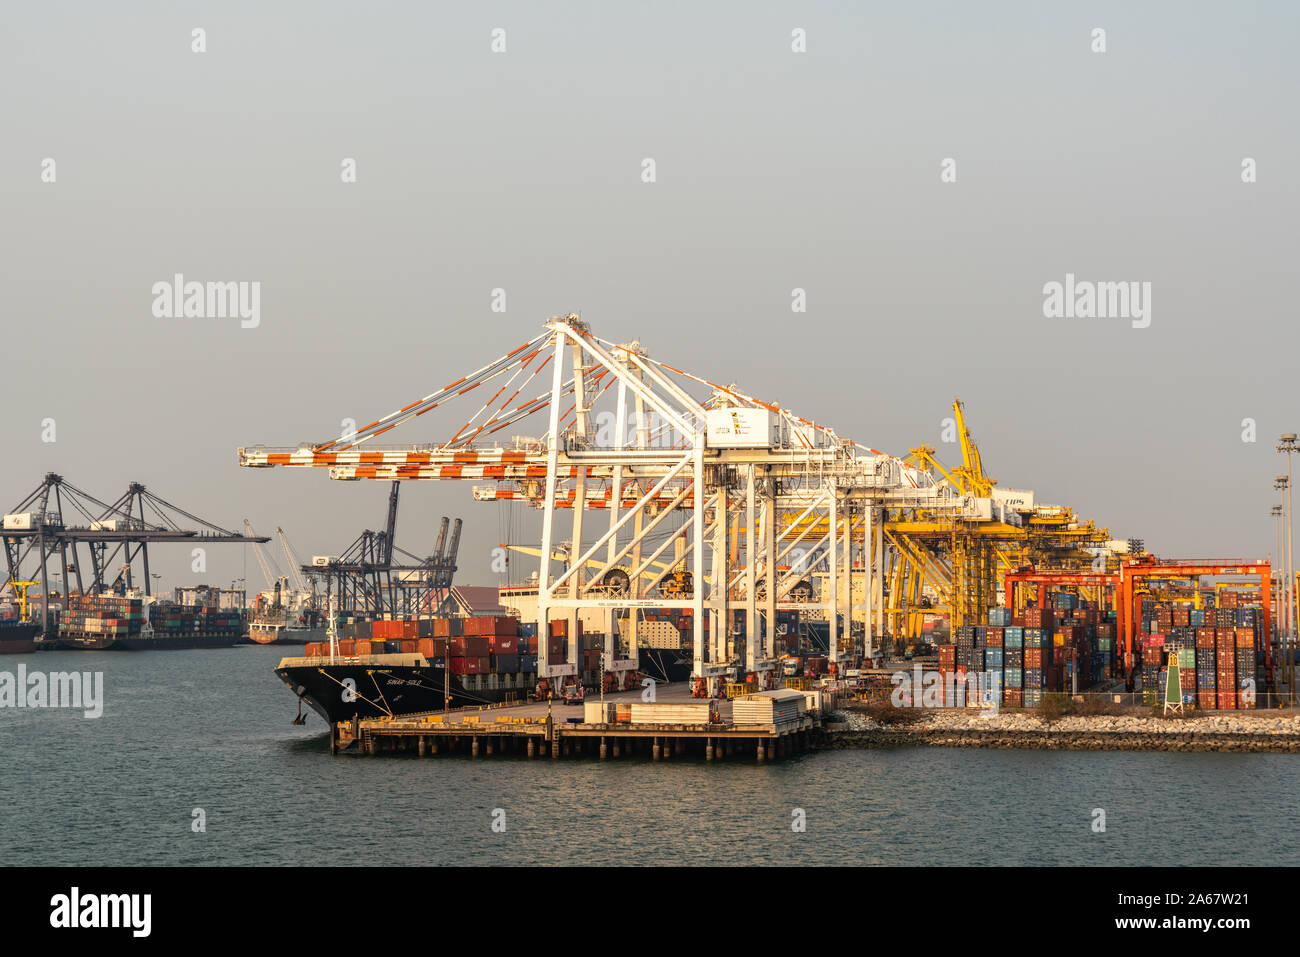 Port de Laem Chabang, Thaïlande - Mars 17, 2019 : longue vue sur un grand nombre de grues sur le quai avec des piles de boîtes colorées contre la lumière blu Banque D'Images